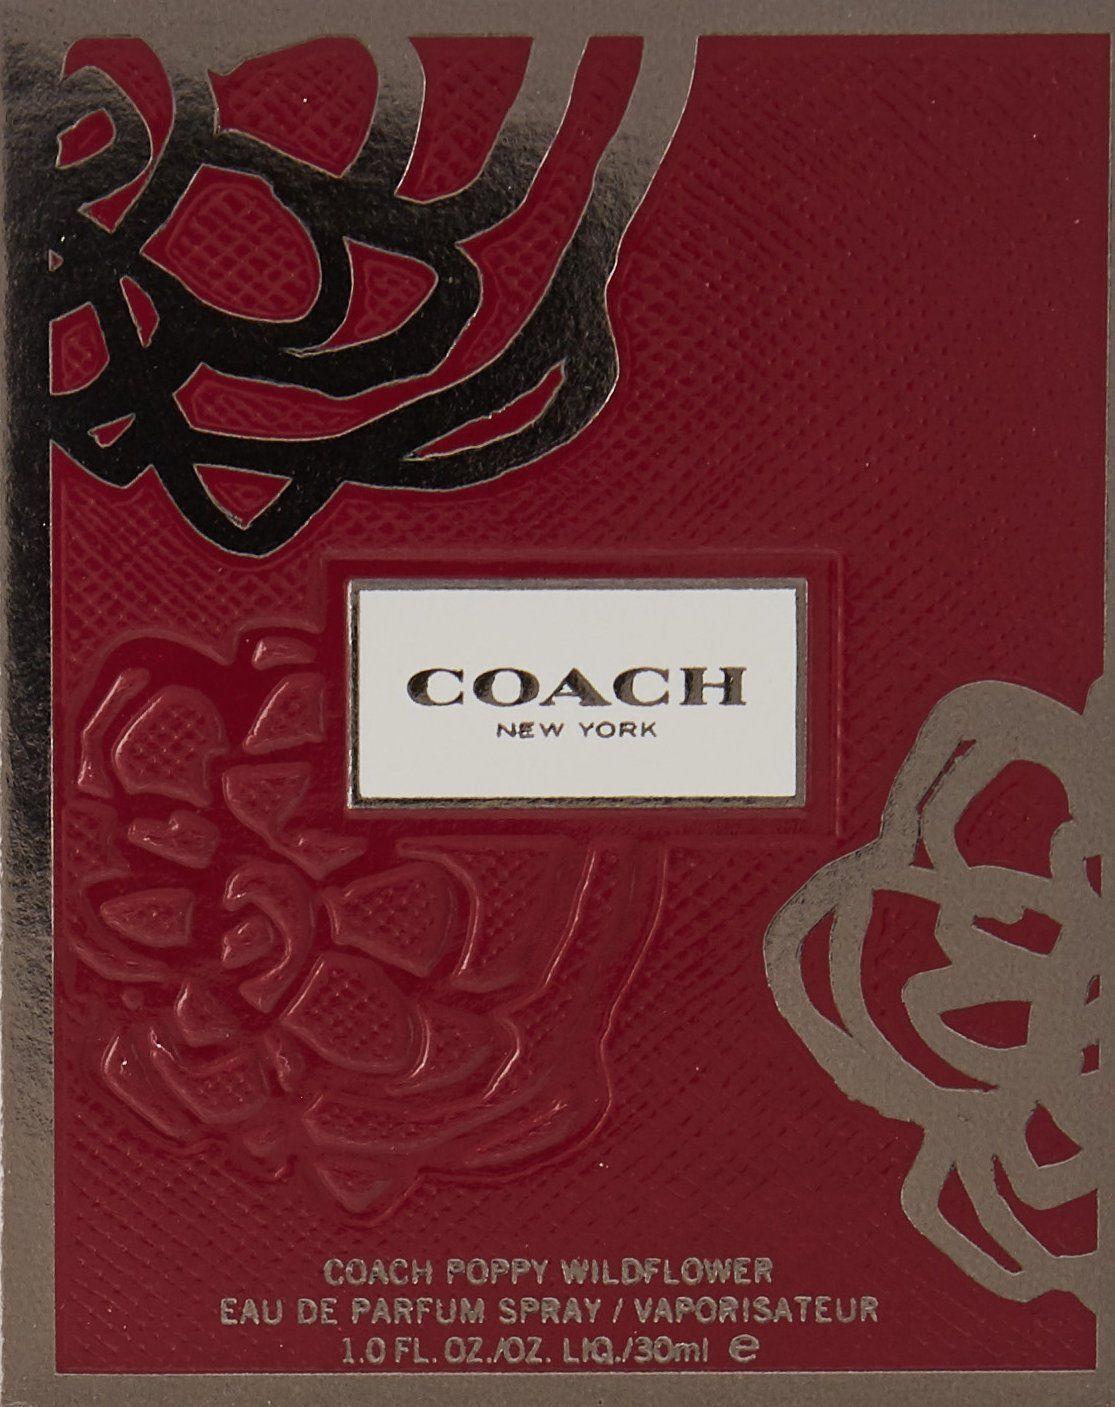 Coach Poppy Logo - Coach Poppy Wildflower By Coach Eau De Parfum Spray 1 Oz: Amazon.co